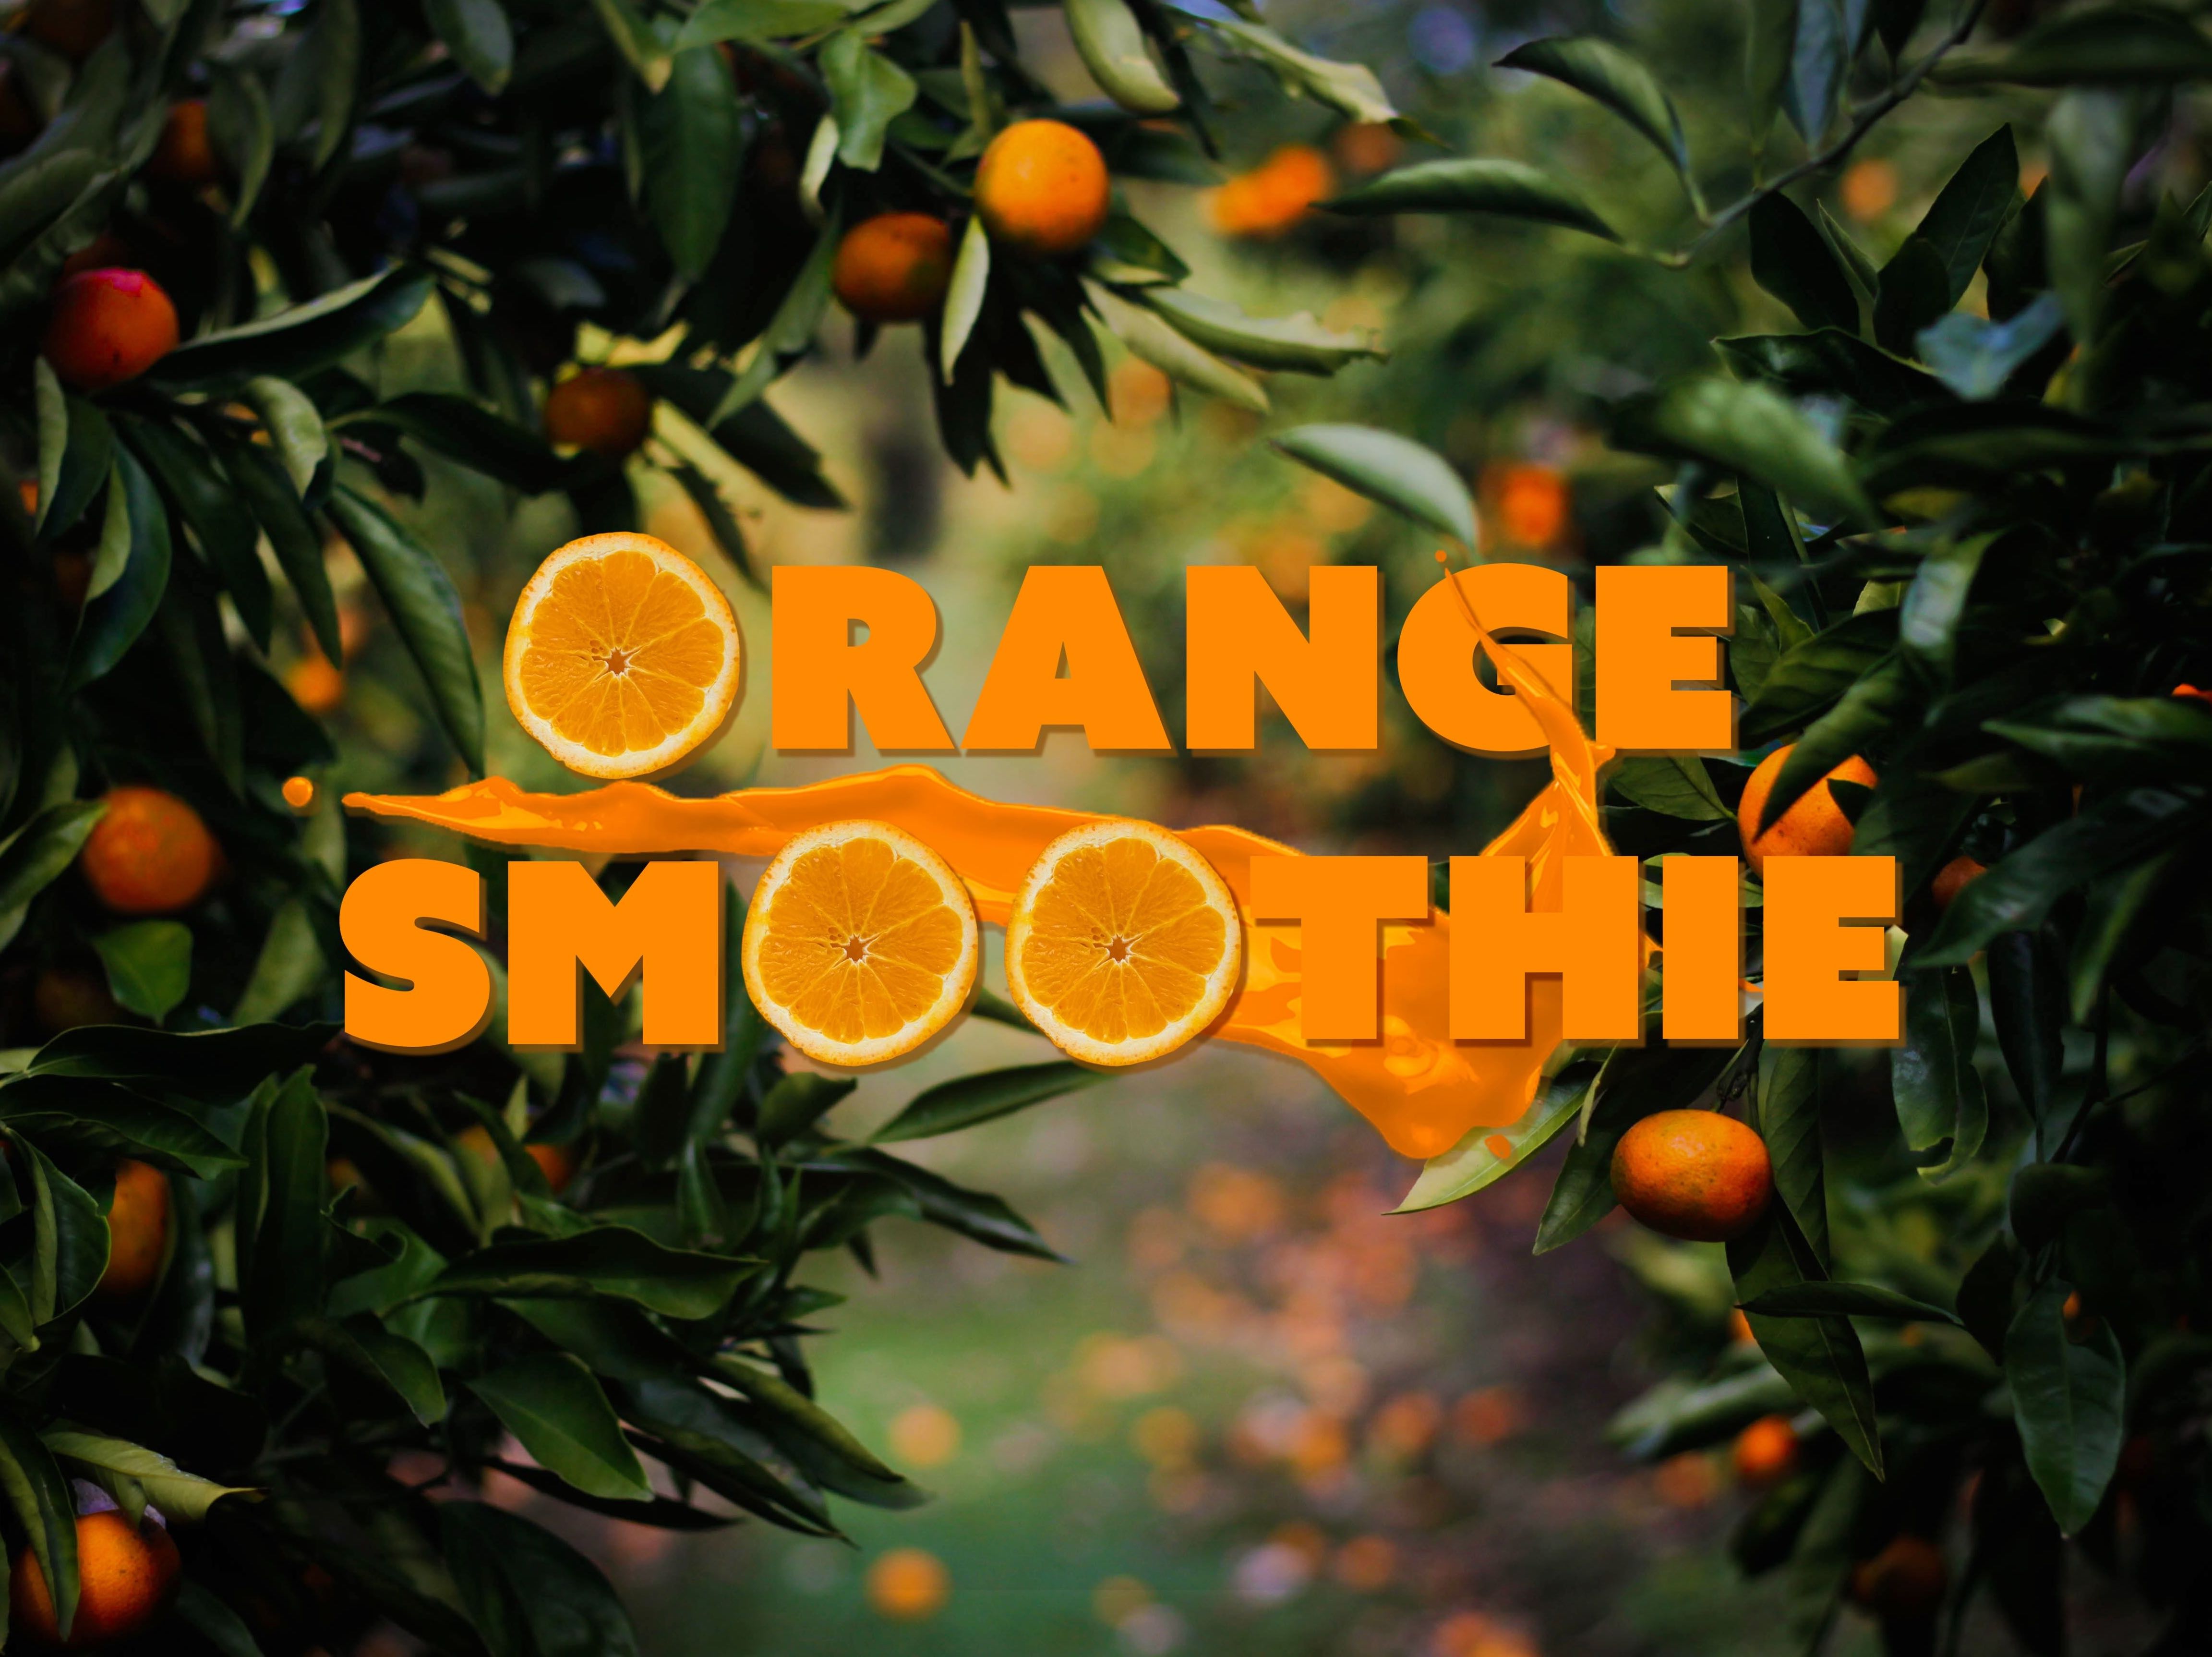 A lush orange grove surrounding the text: Orange Smoothie